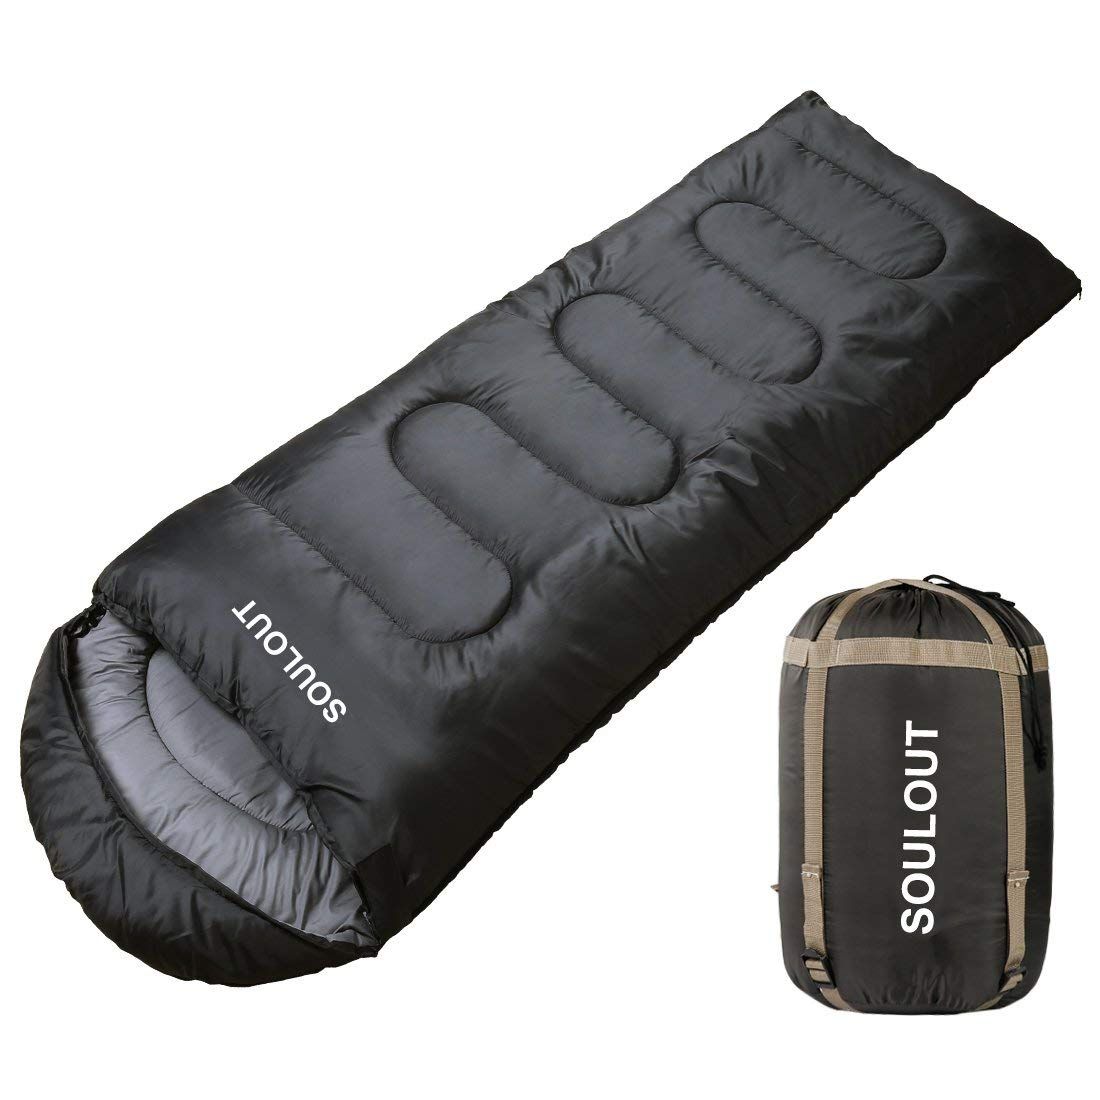 Cool sleeping bags